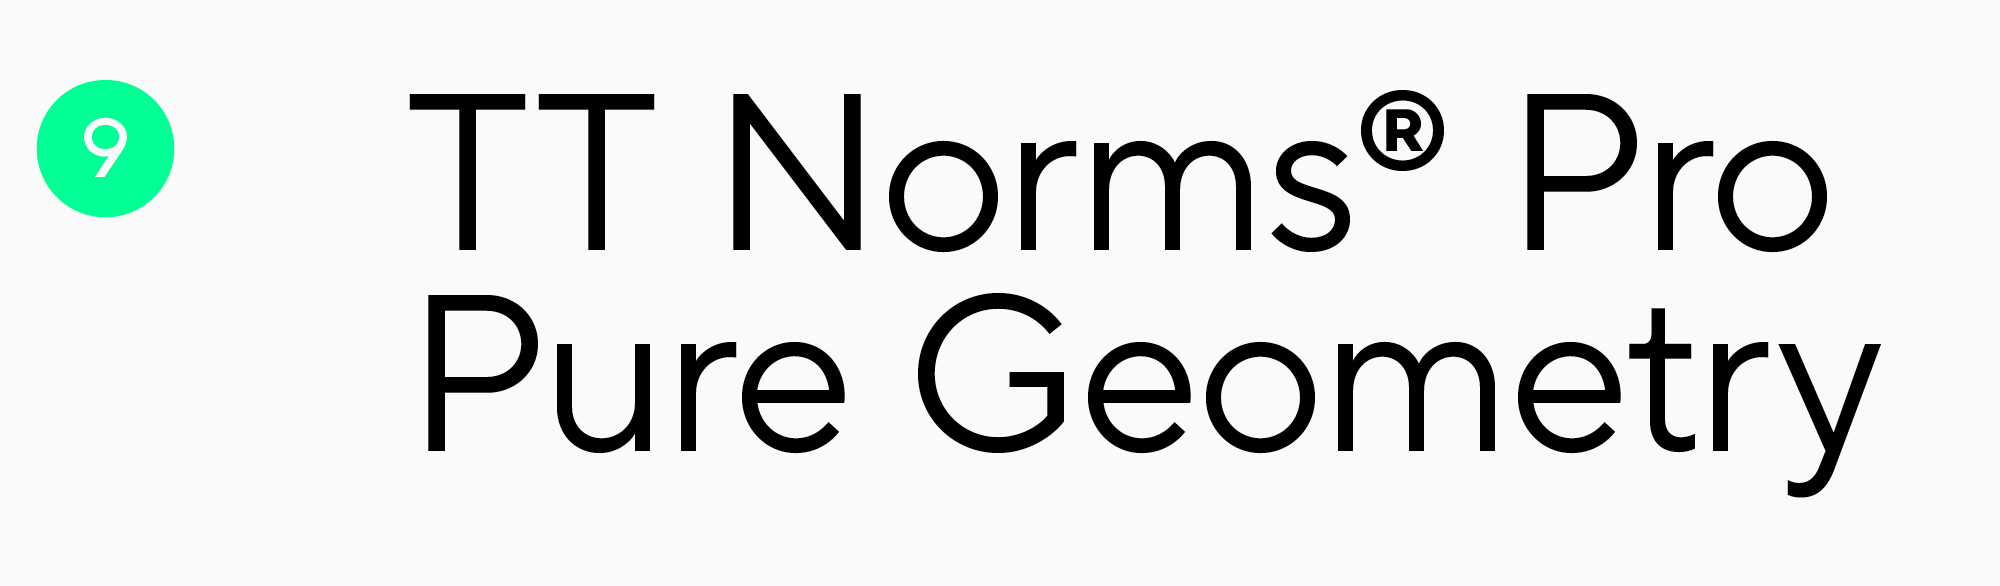 TT Norms Pro шрифт для заголовка плаката